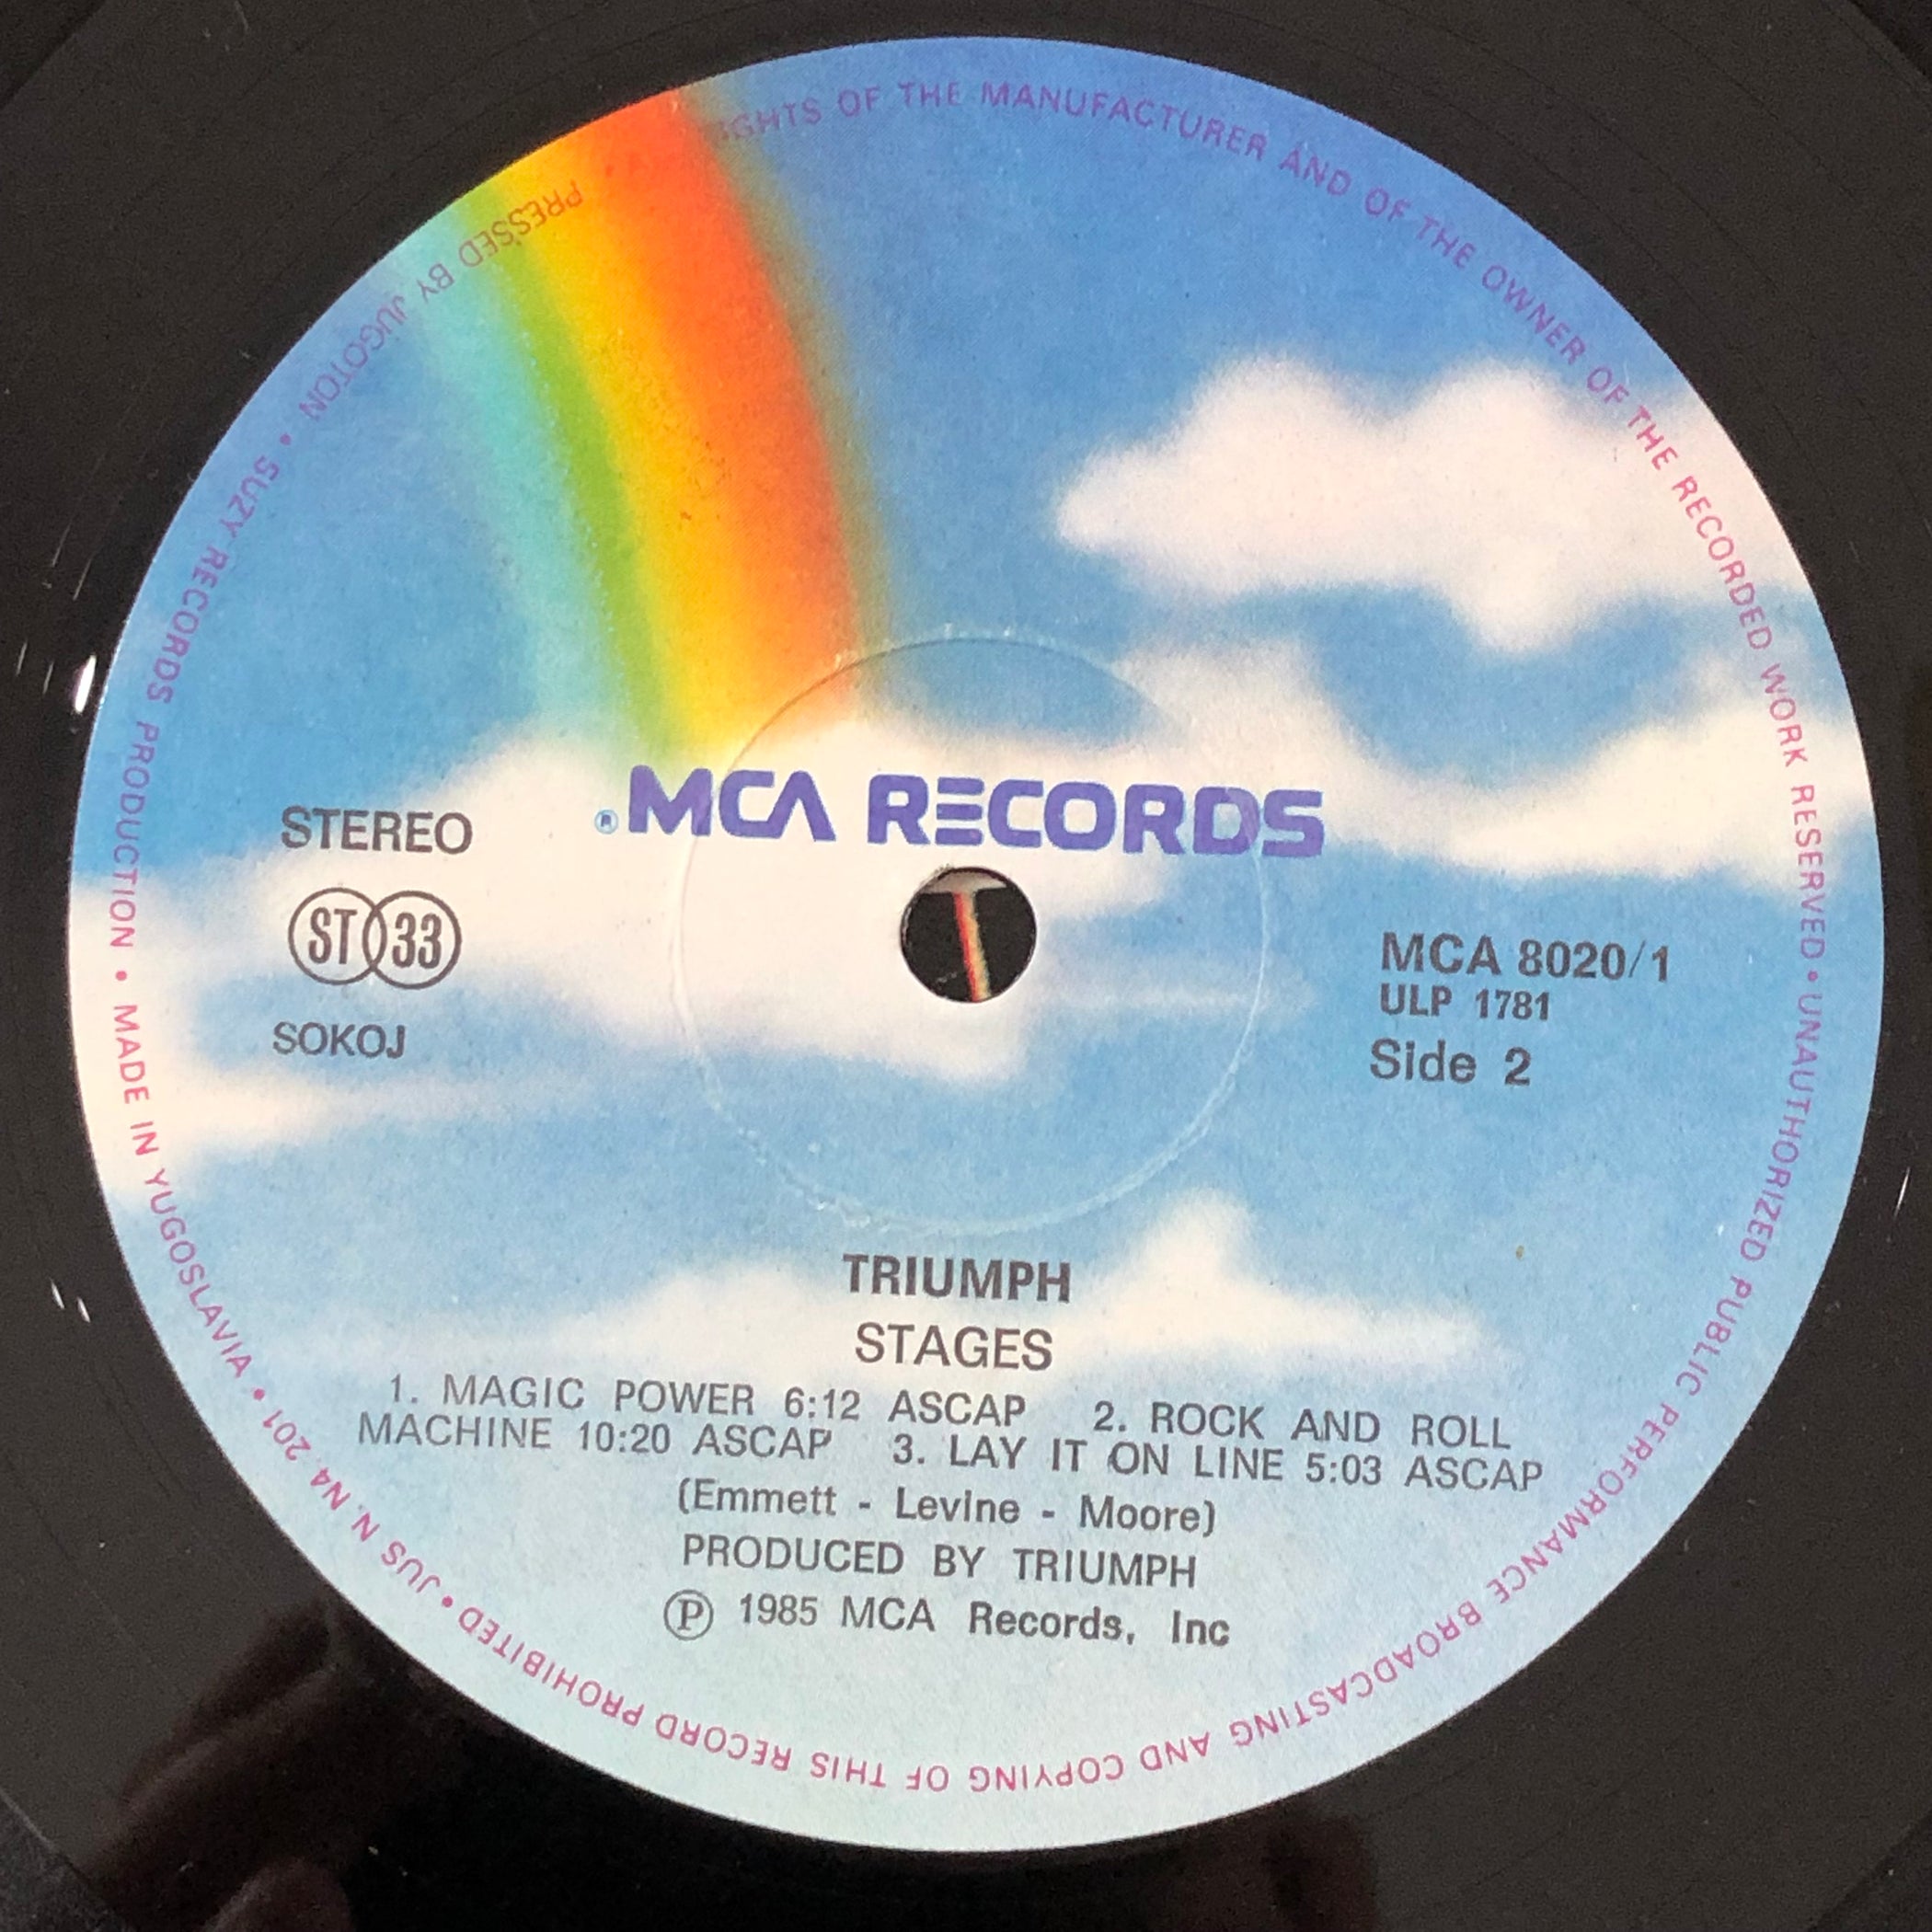 Triumph - Stages (Vinyl 2LP)[Gatefold] — Record Exchange